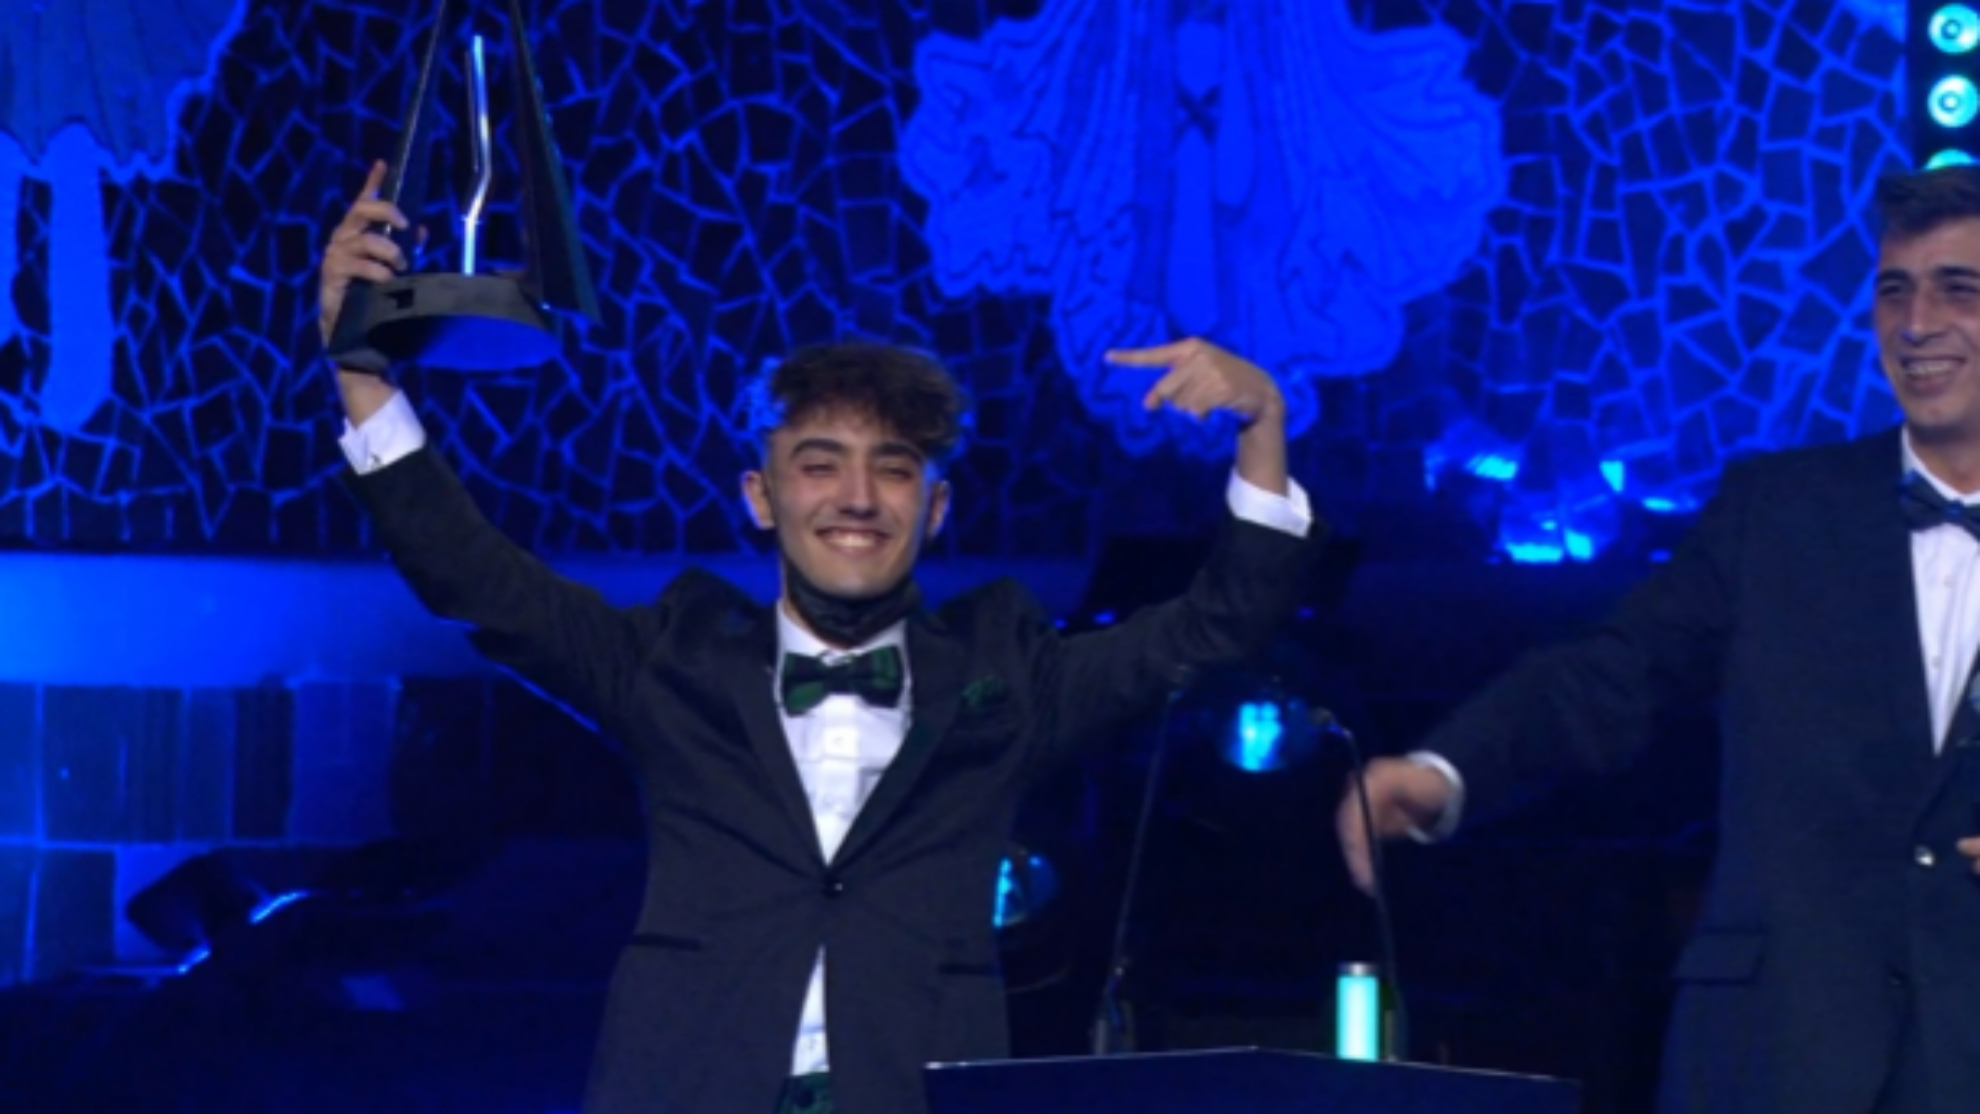 Agustín51 gana el premo a "El enfado del año" en ESLAND